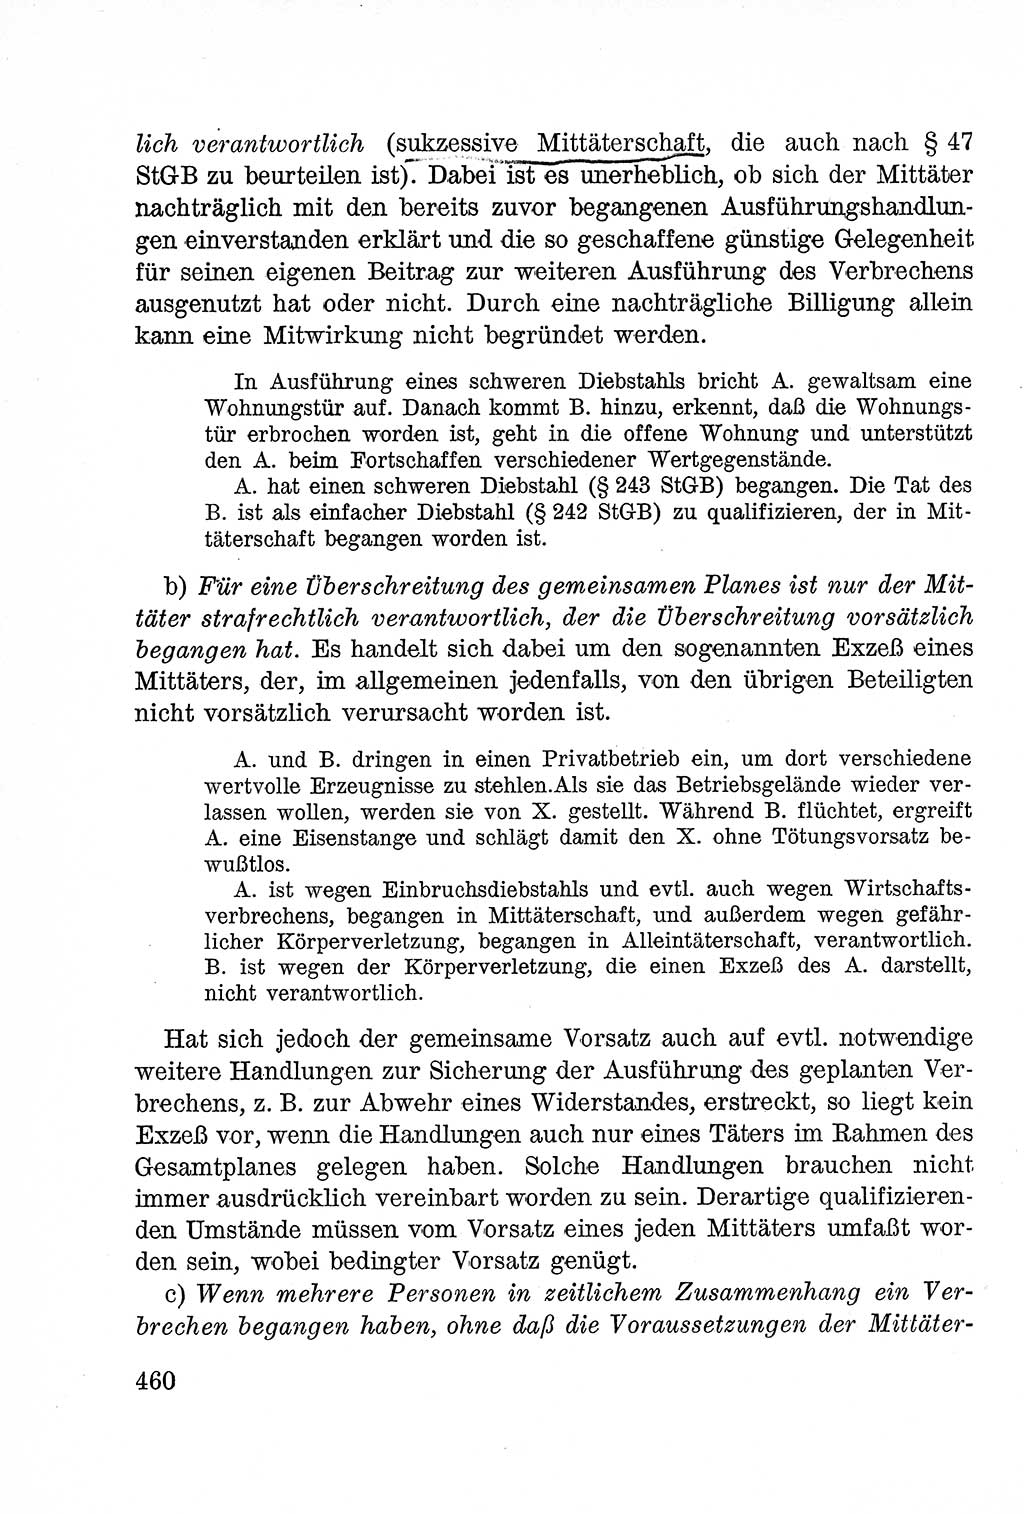 Lehrbuch des Strafrechts der Deutschen Demokratischen Republik (DDR), Allgemeiner Teil 1957, Seite 460 (Lb. Strafr. DDR AT 1957, S. 460)